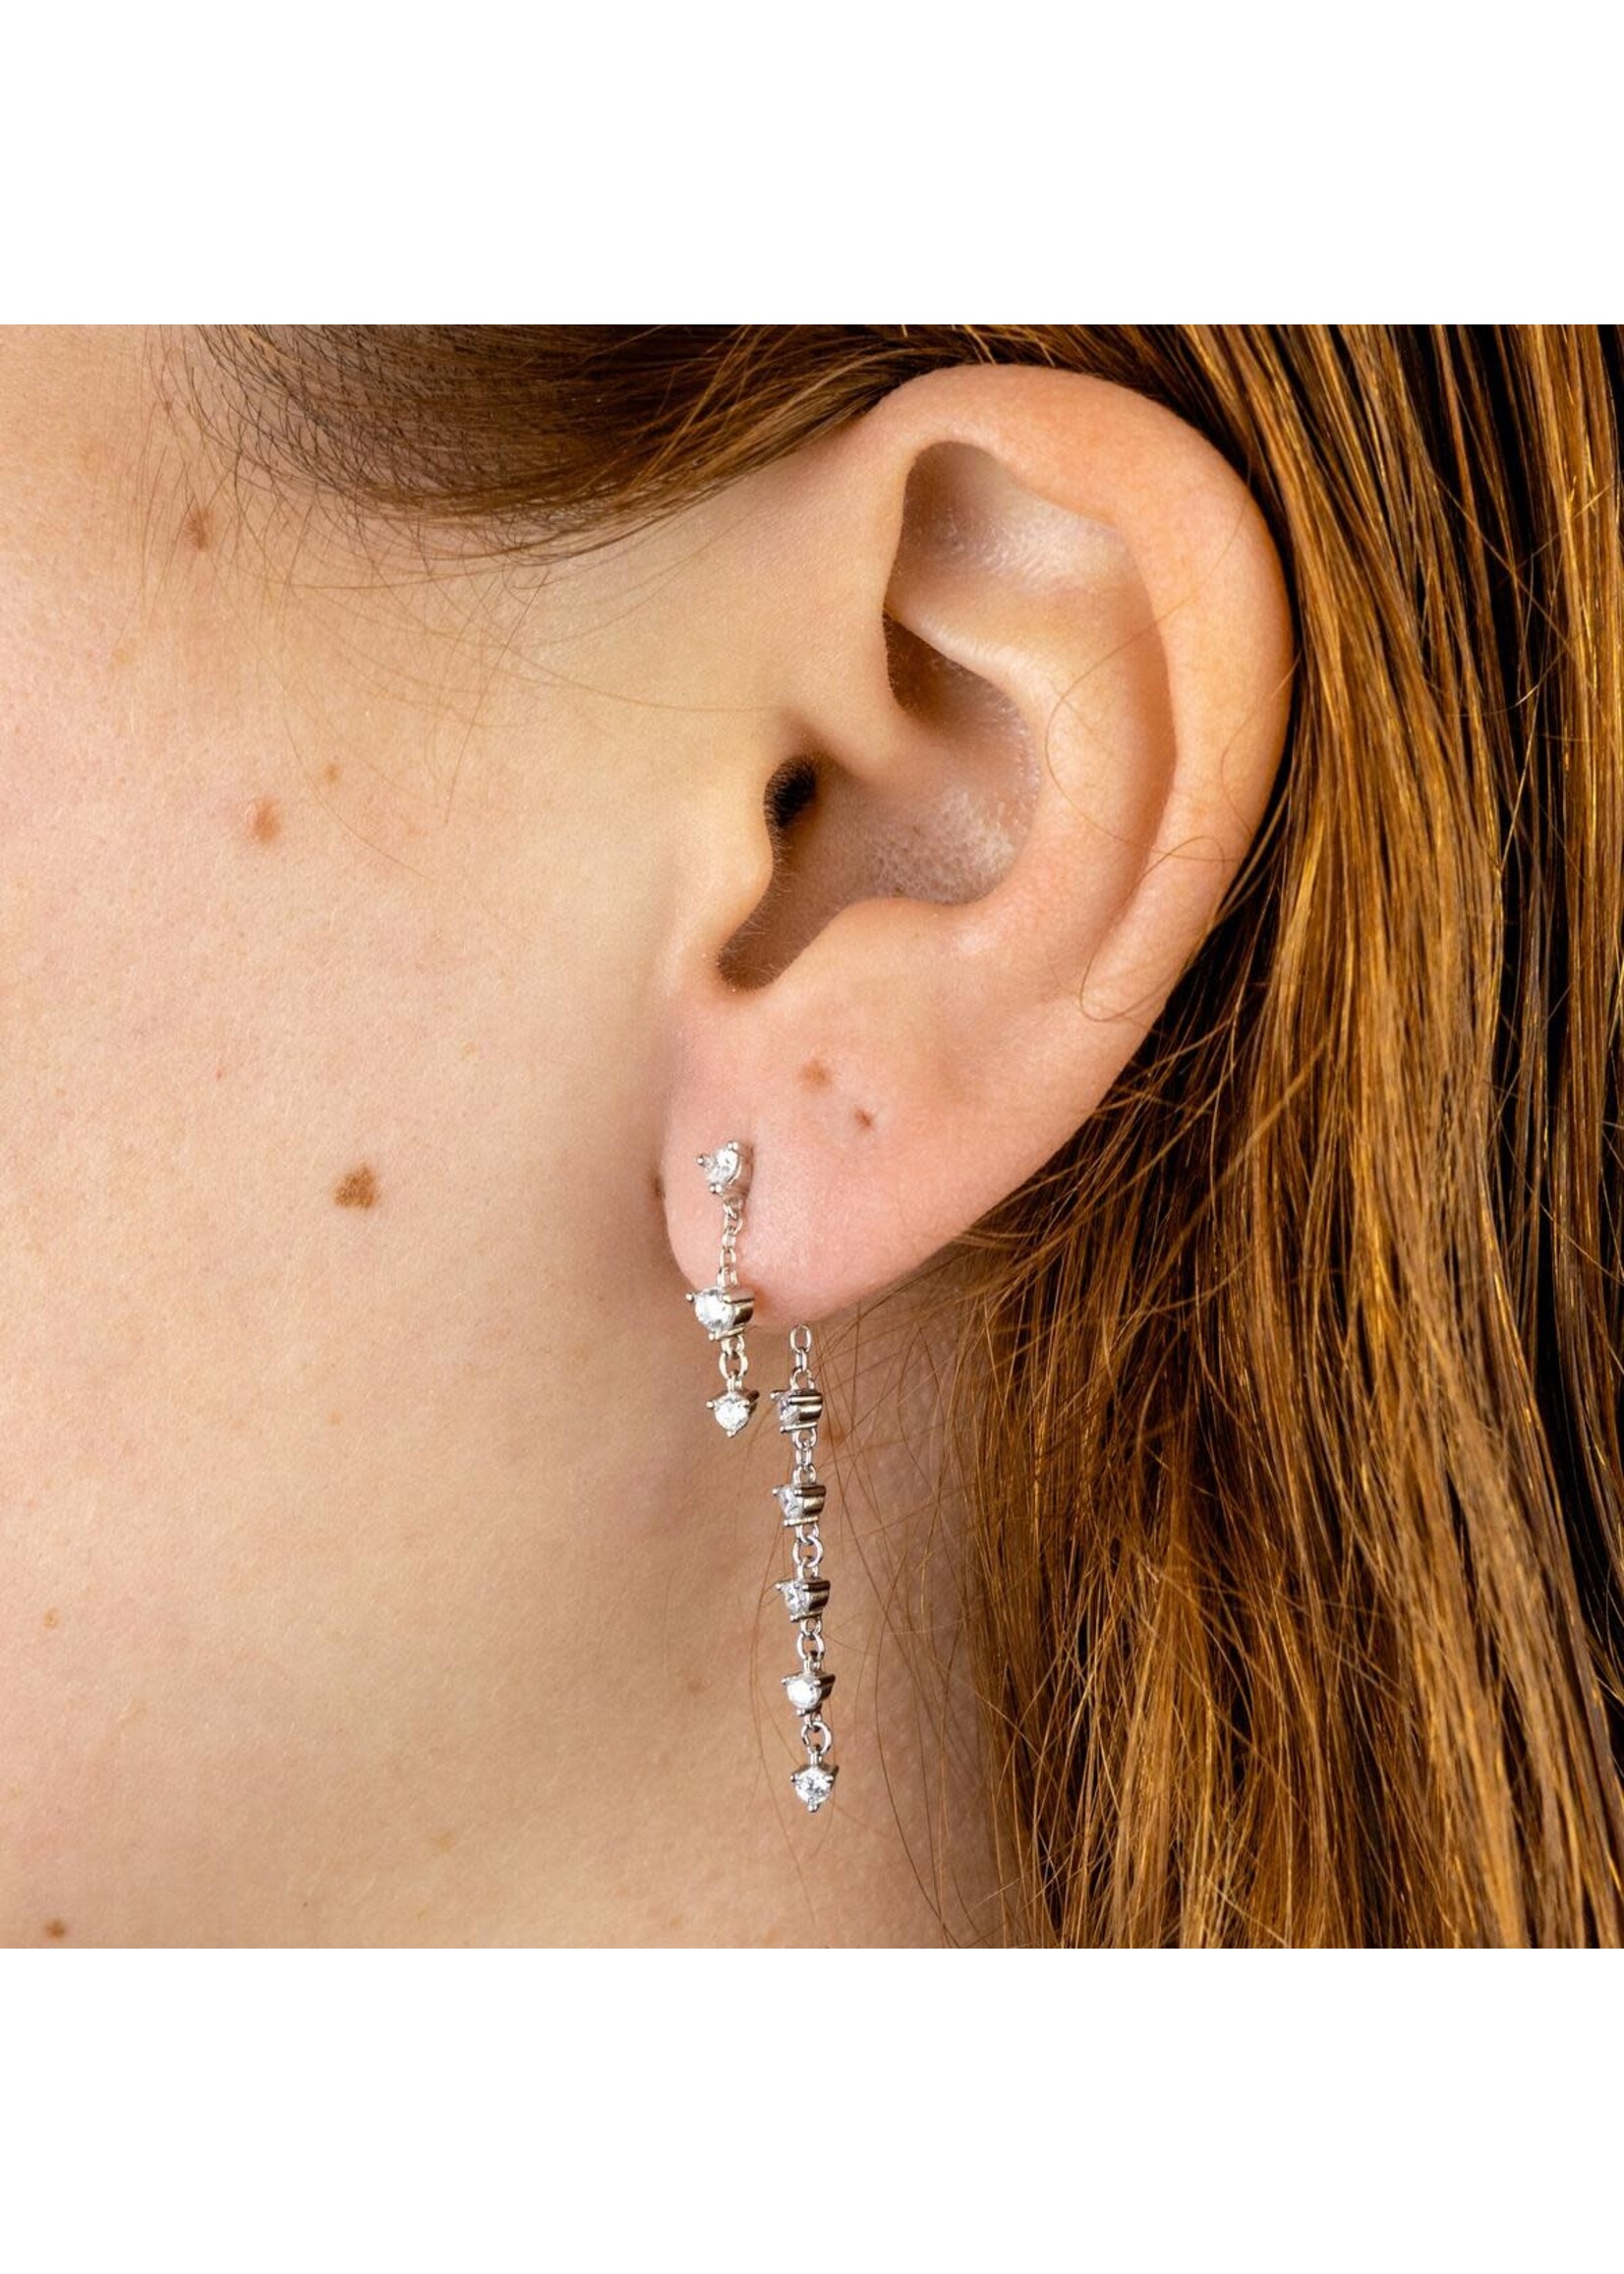 ALCO Jewelry Disco Craze Backdrop Earrings